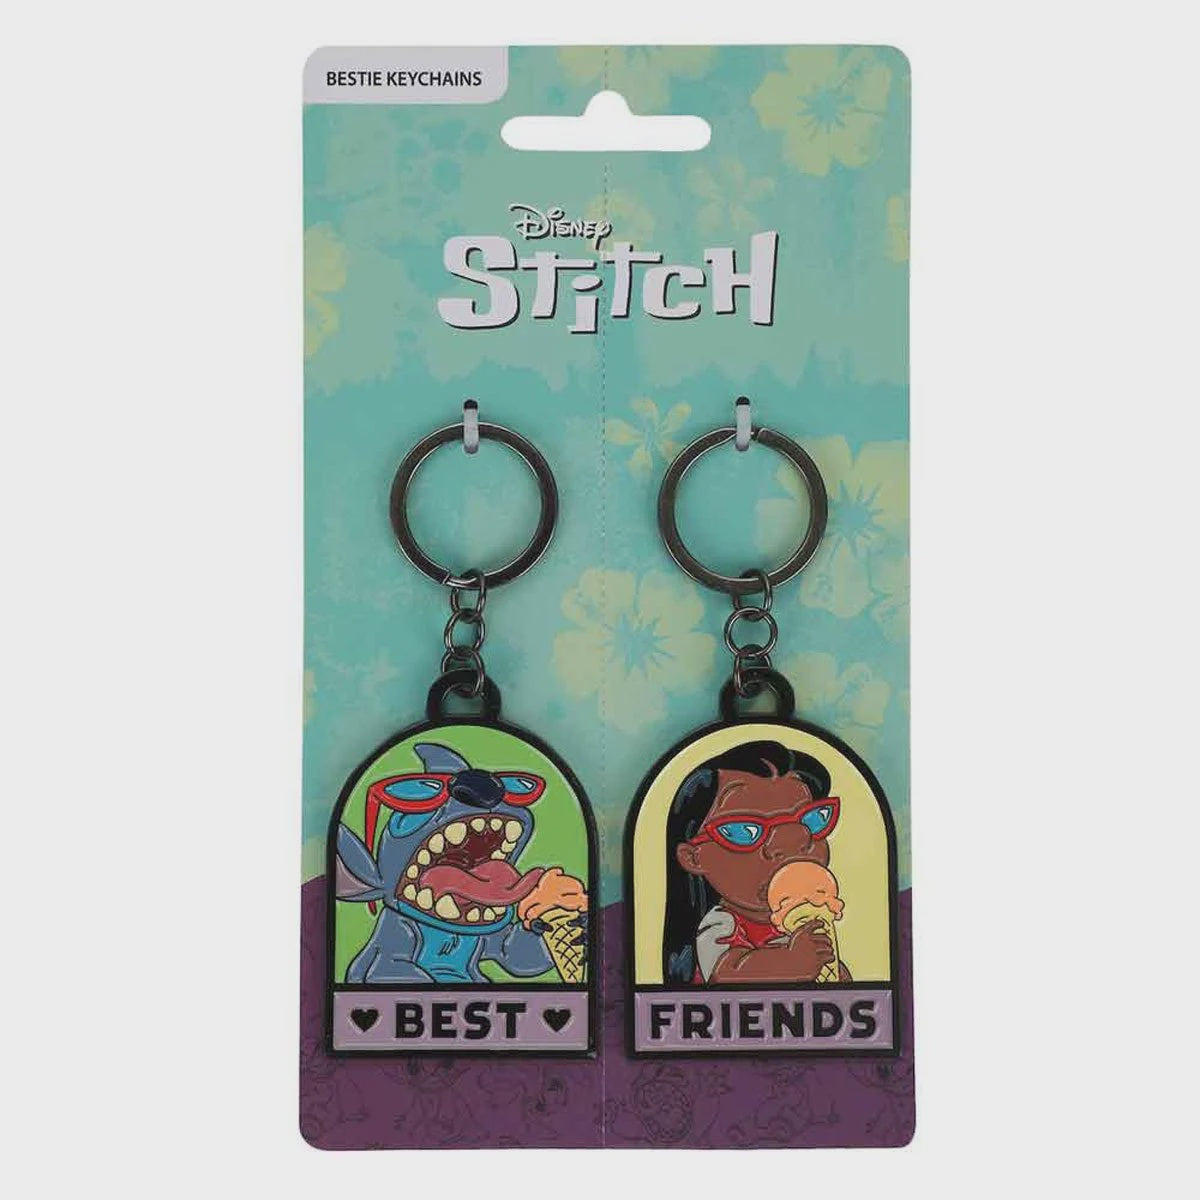 Disney Lilo & Stitch Bestie Key Chain Set